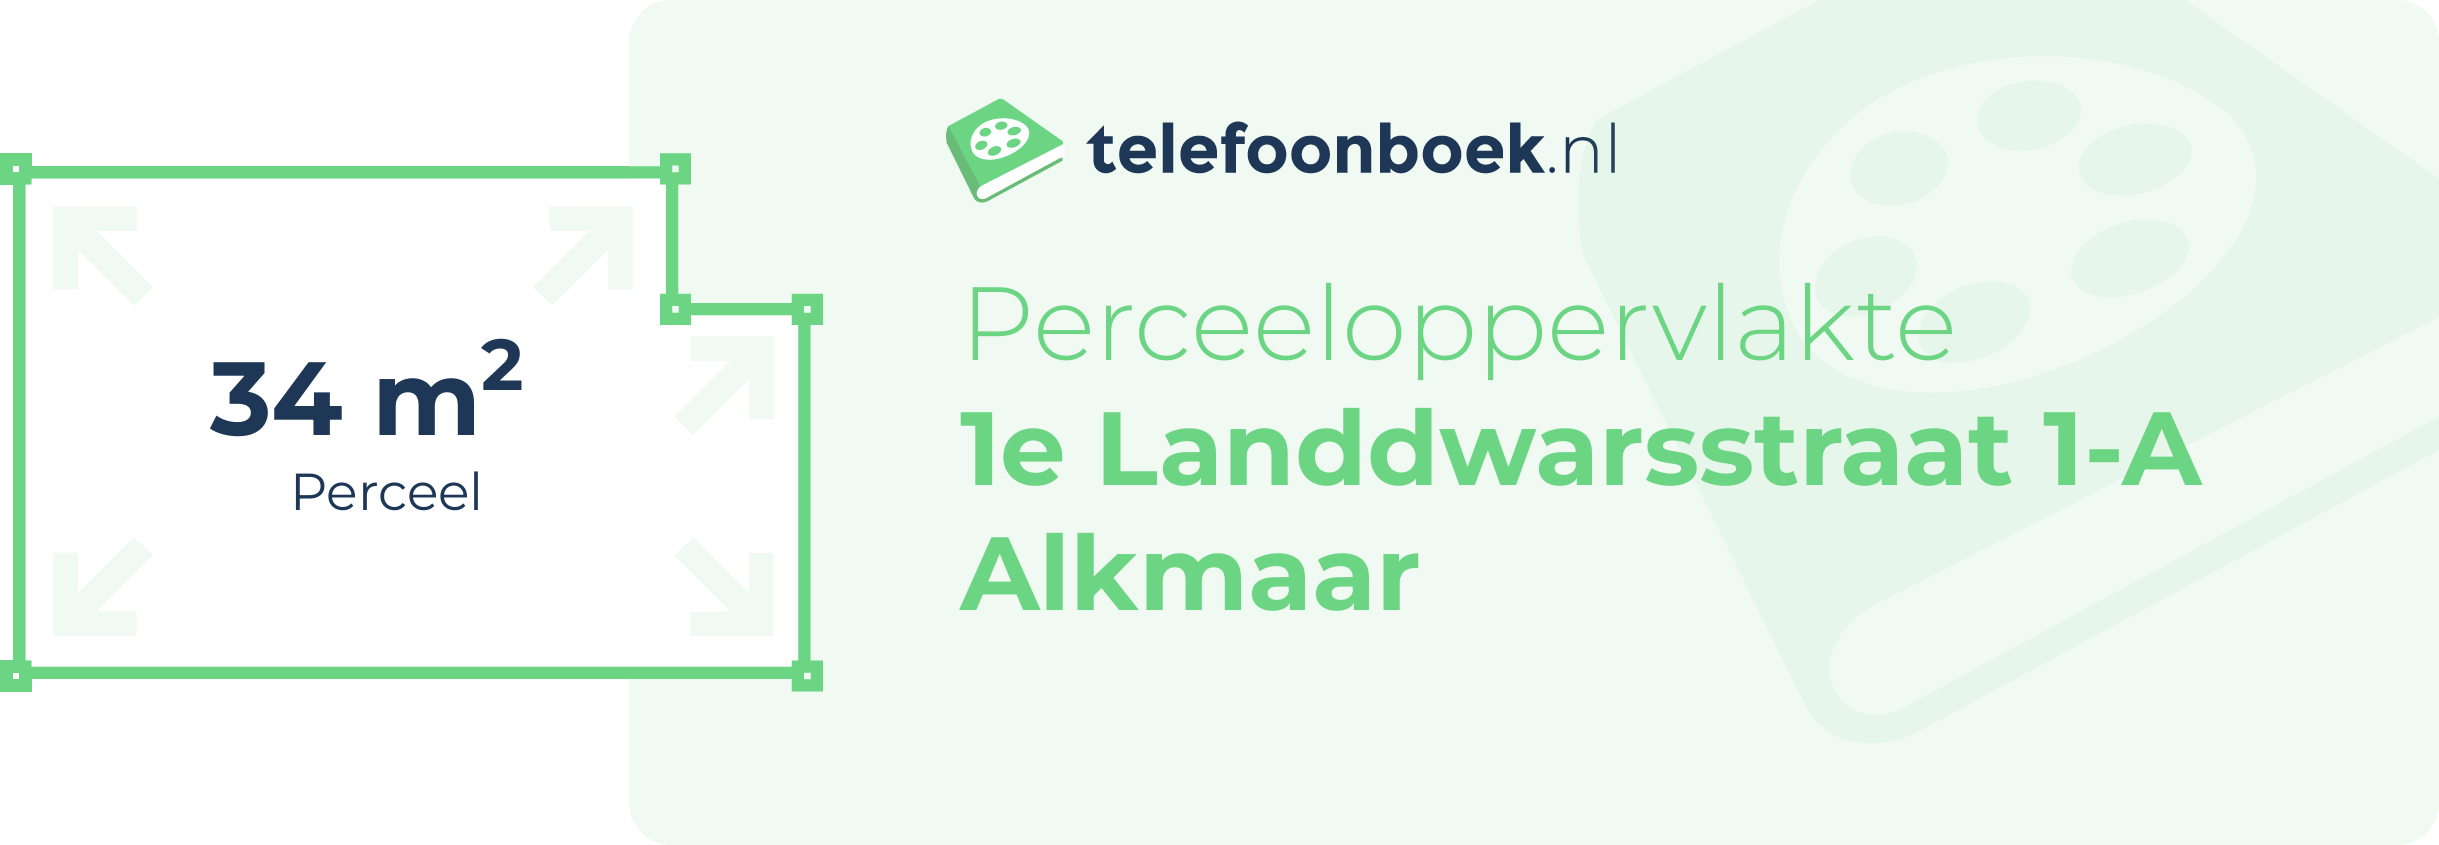 Perceeloppervlakte 1e Landdwarsstraat 1-A Alkmaar